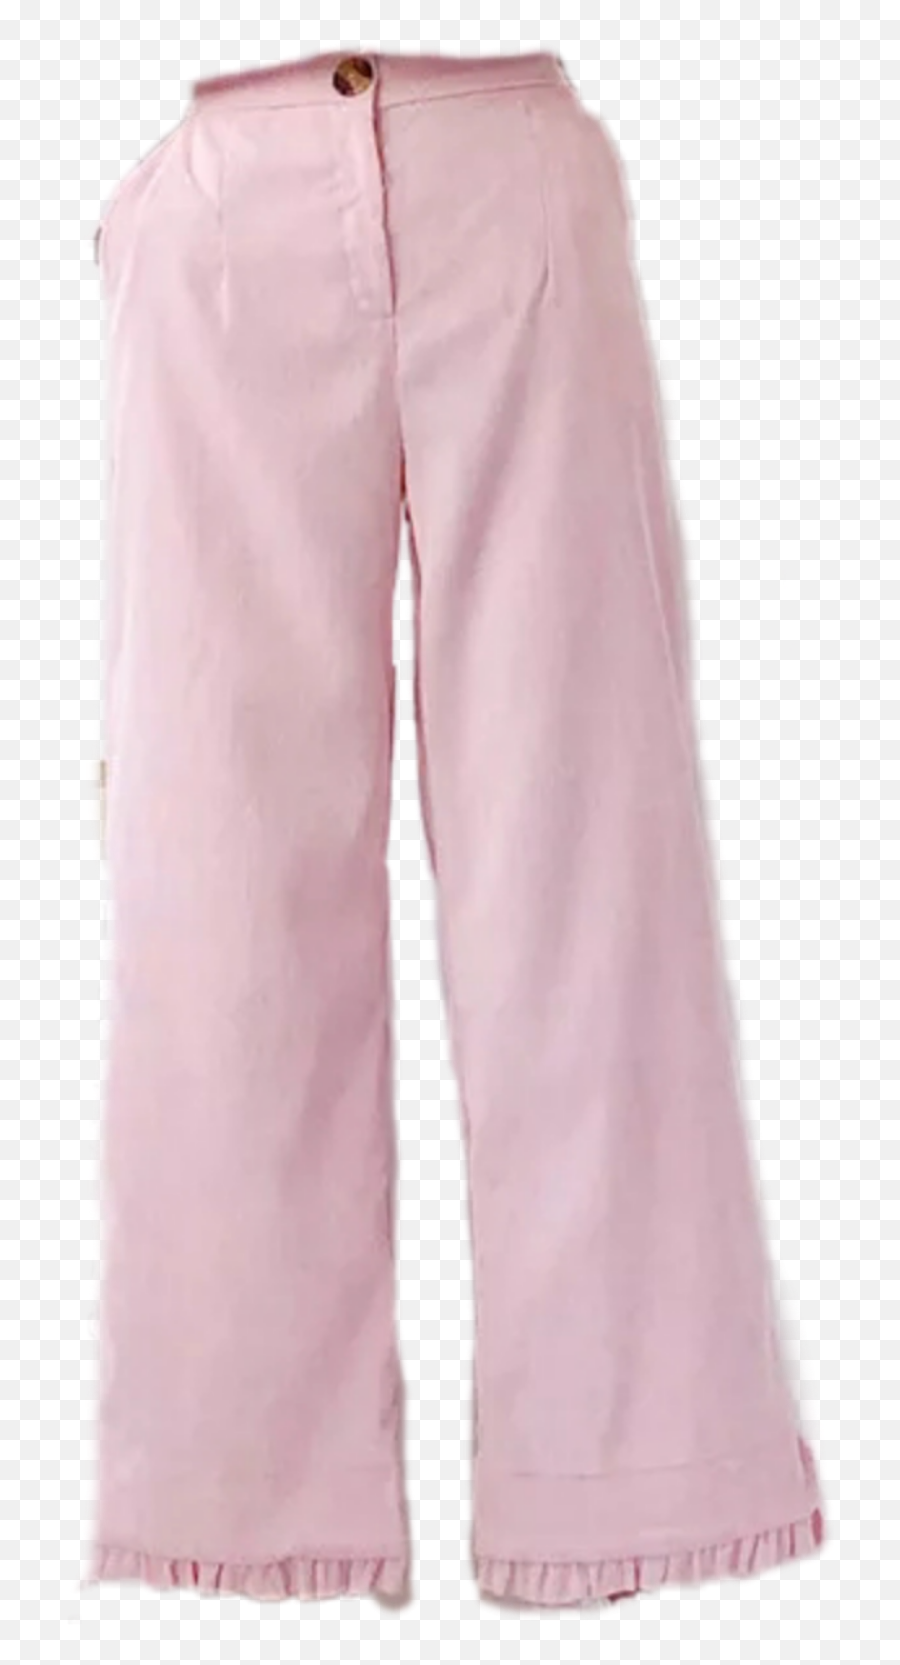 The Most Edited Pant Picsart - Solid Emoji,Emoji Pajamas Pants